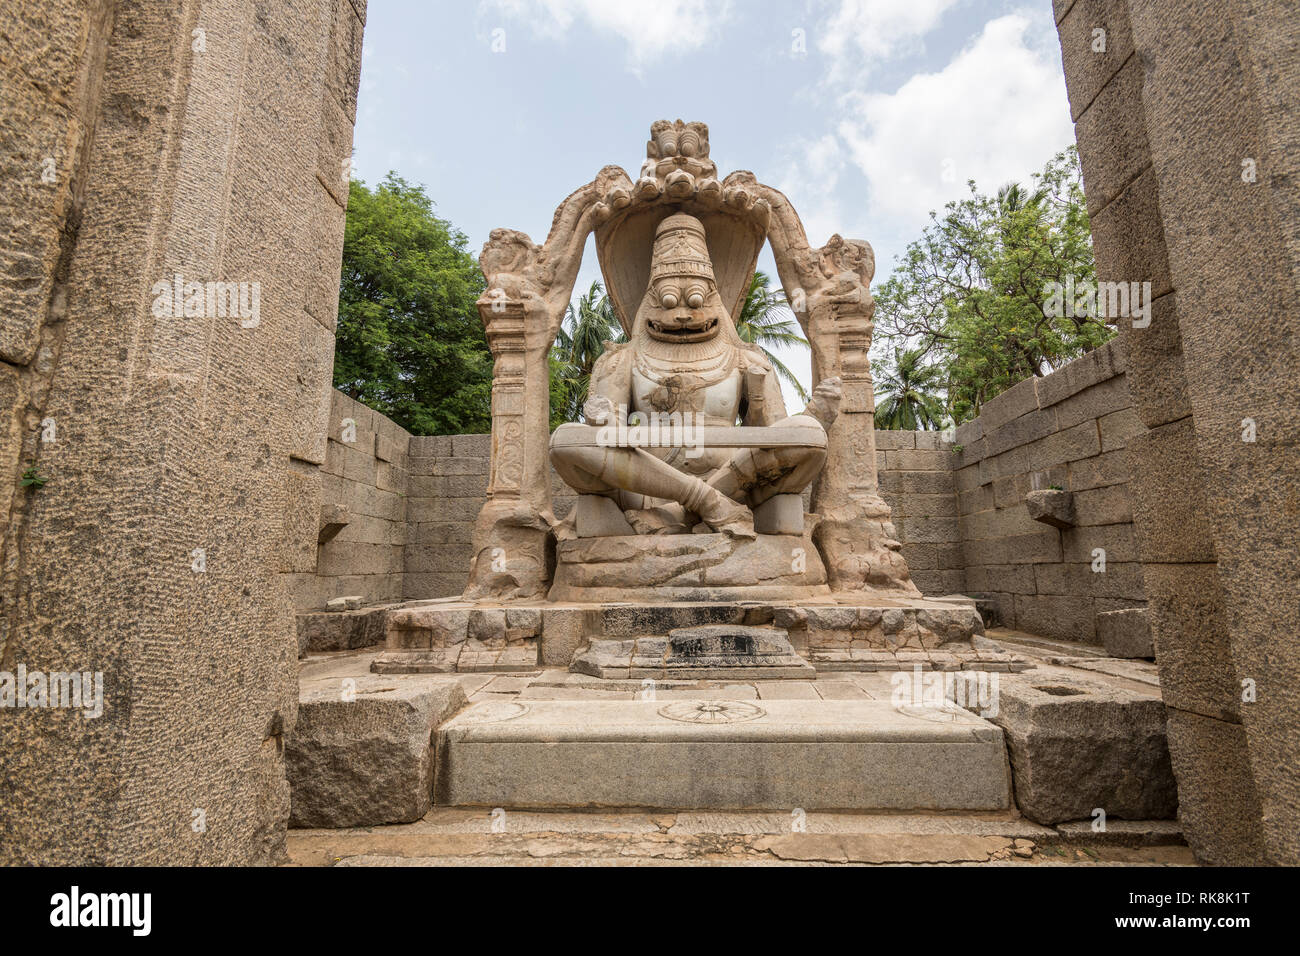 Le Lakshmi Narasimha Hampi temple est dédié au dieu Vishnu. Il y avait une statue de la déesse Lakshmi assis sur les genoux de Vishnu qui a été détruit. Banque D'Images